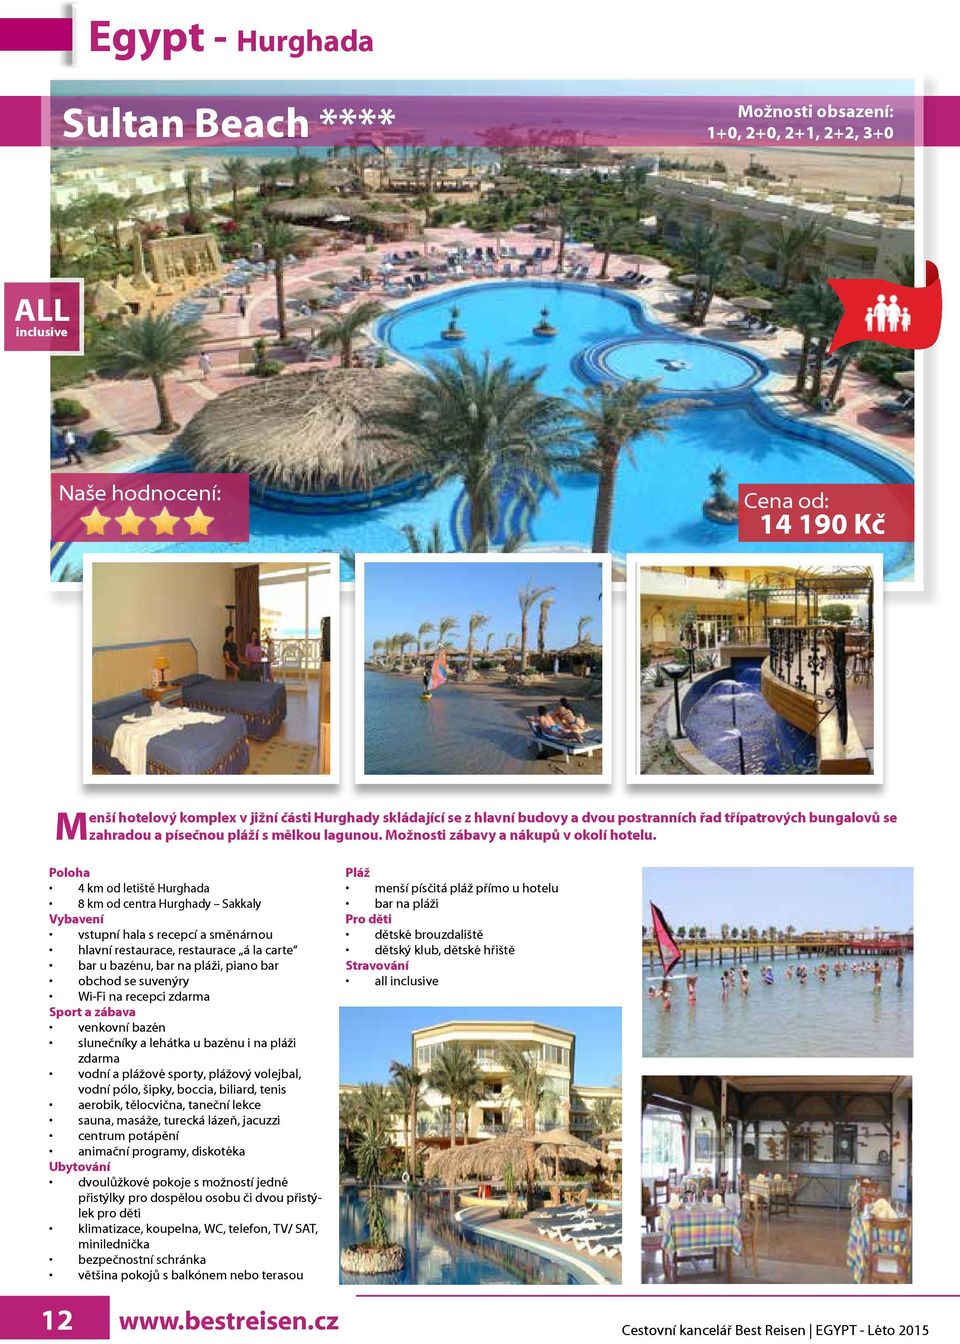 Poloha 4 km od letiště Hurghada 8 km od centra Hurghady Sakkaly Vybavení vstupní hala s recepcí a směnárnou hlavní restaurace, restaurace á la carte bar u bazénu, bar na pláži, piano bar obchod se